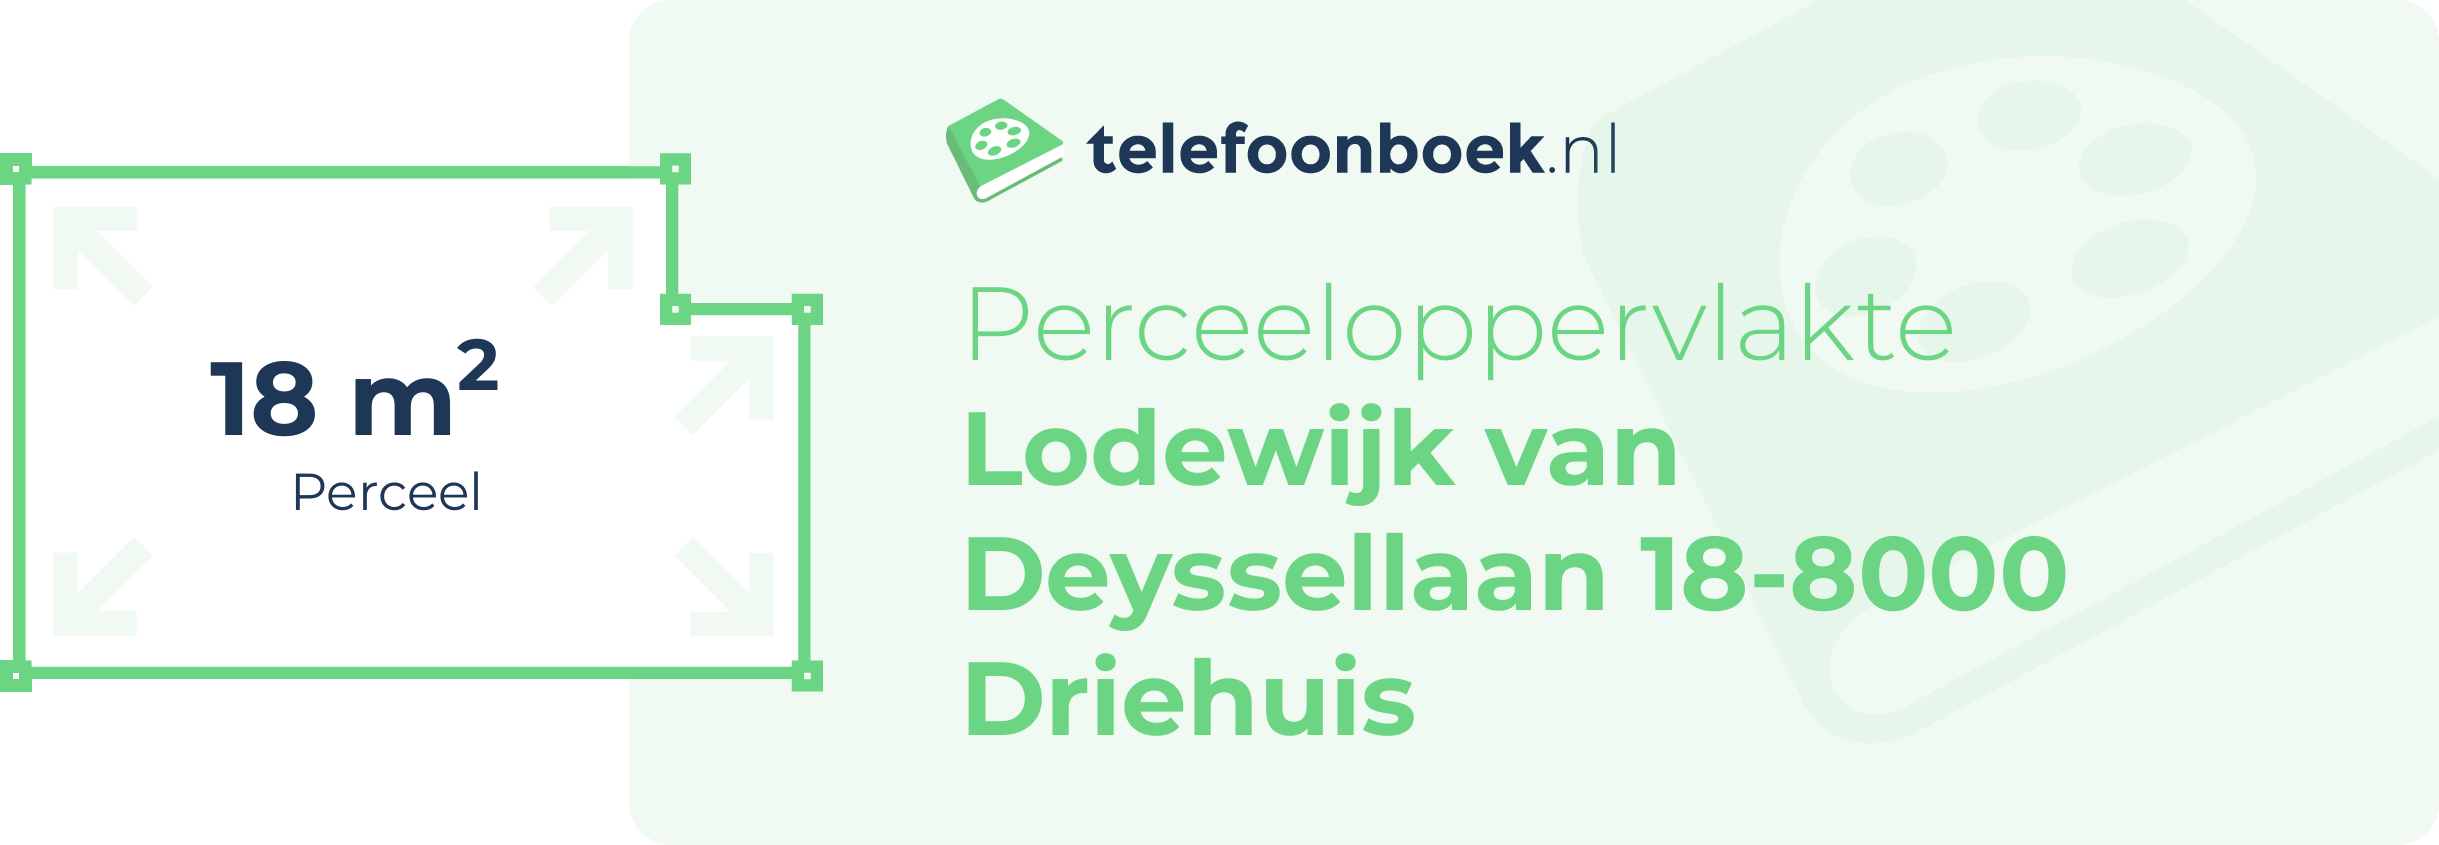 Perceeloppervlakte Lodewijk Van Deyssellaan 18-8000 Driehuis